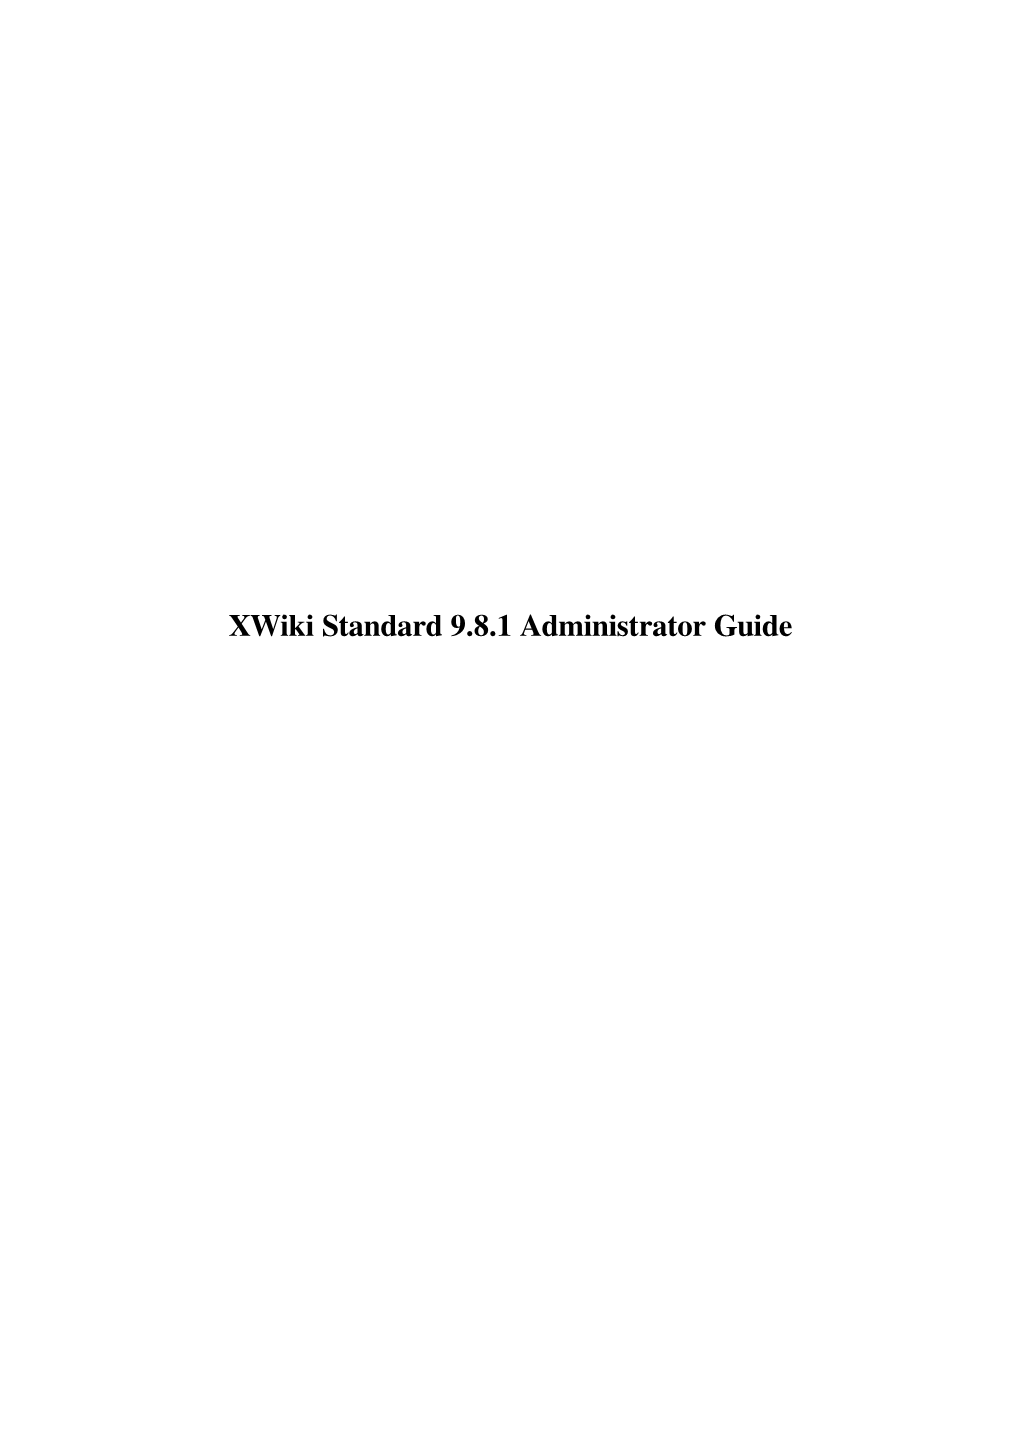 Xwiki Standard 9.8.1 Administrator Guide Xwiki Standard 9.8.1 Administrator Guide